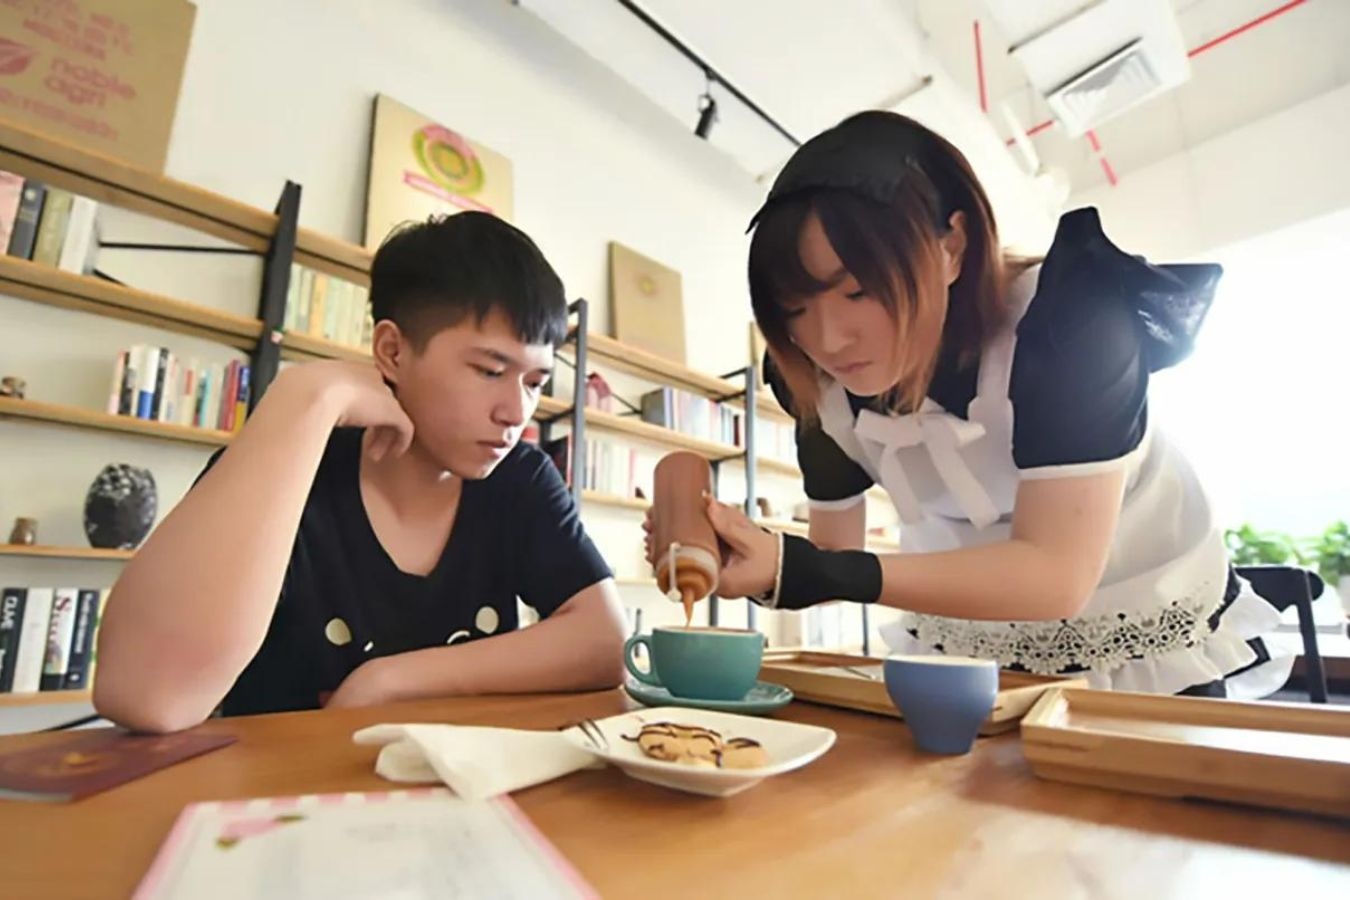 Tẩy chay cà phê hầu gái, gọi khách là ''chủ nhân'' tại Trung Quốc - ảnh 3